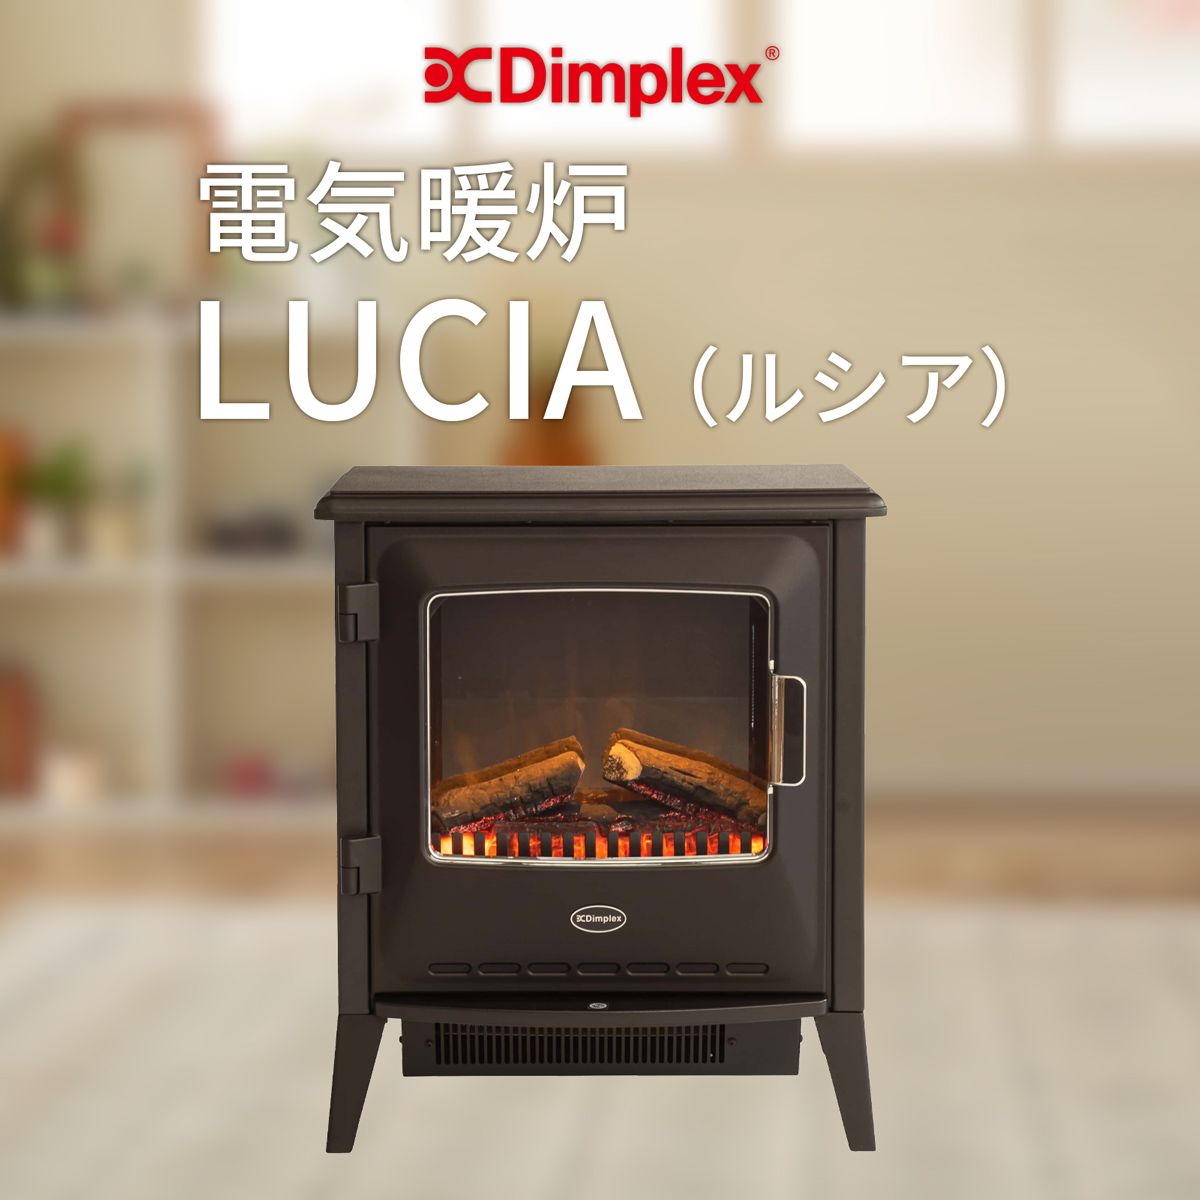 Dimplex 電気暖炉 Lucia